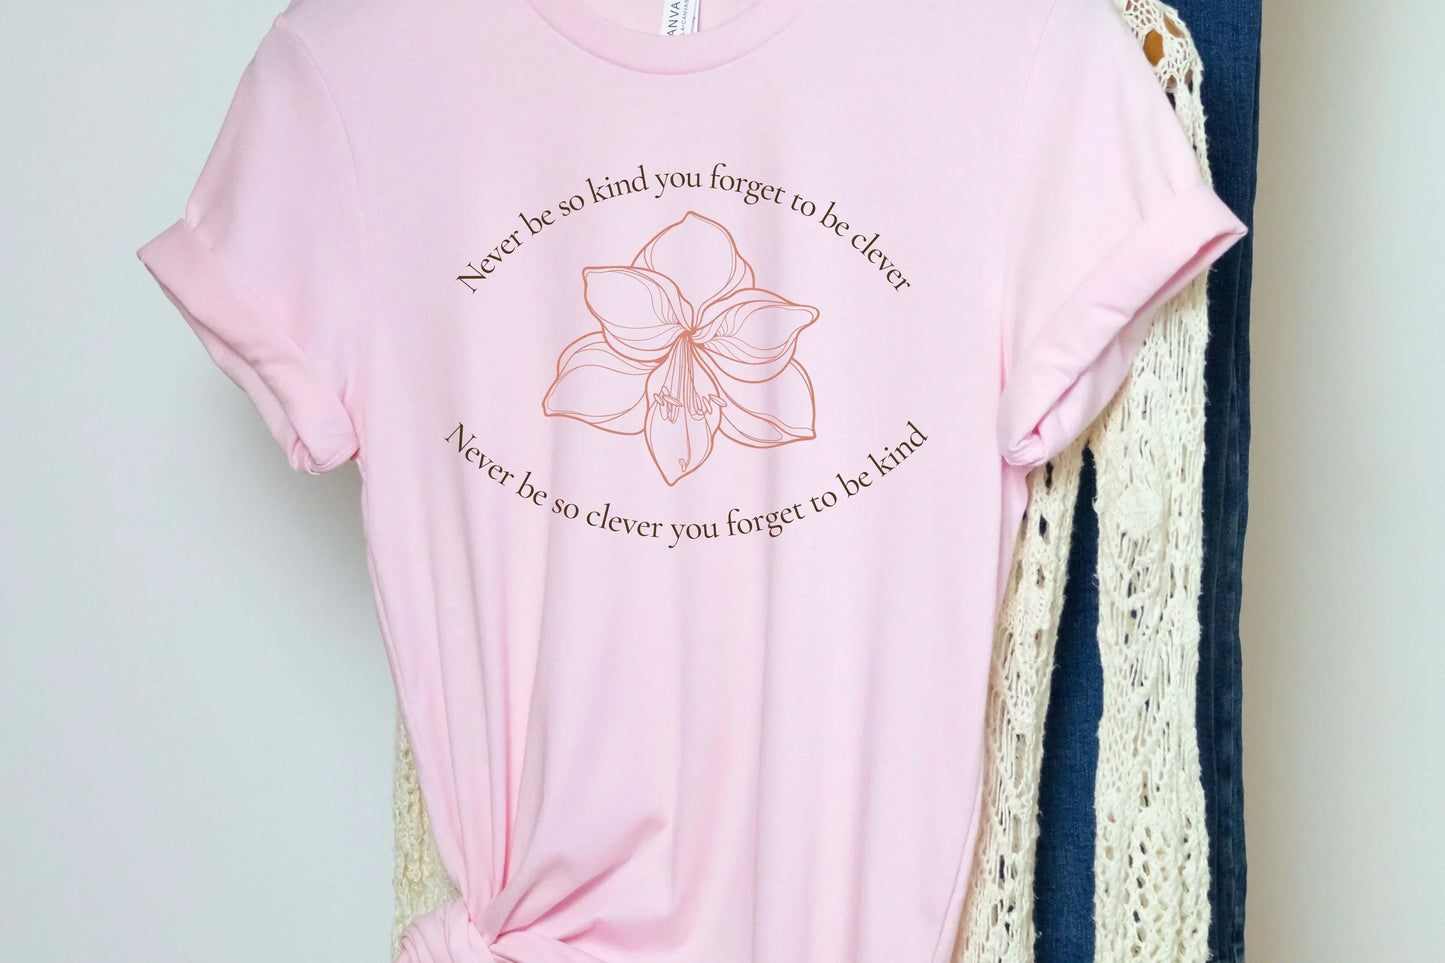 Taylor Motivational Shirt, Kindness Sweatshirt, Fall Crewneck, Concert T-Shirt, Best Friend Gift, Mindset Sweater, Fan Gift For Teenager HMDesignStudioUS